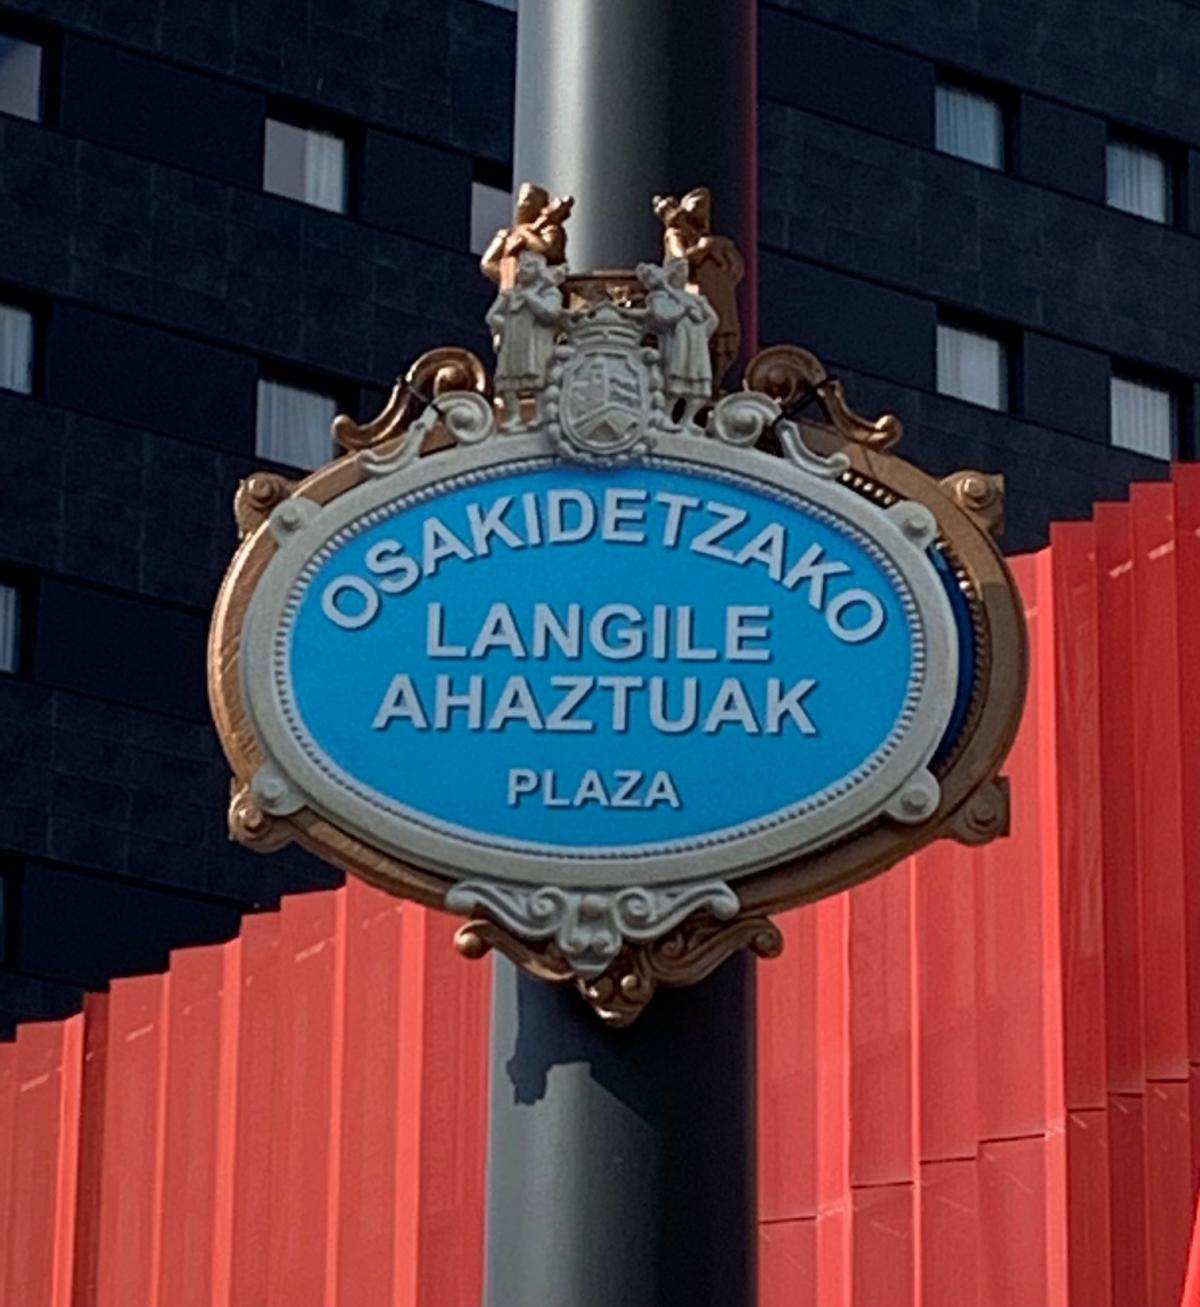 Placa que los sindicatos en la reinauguracin de la "Plaza de los sanitarios" de Bilbao.